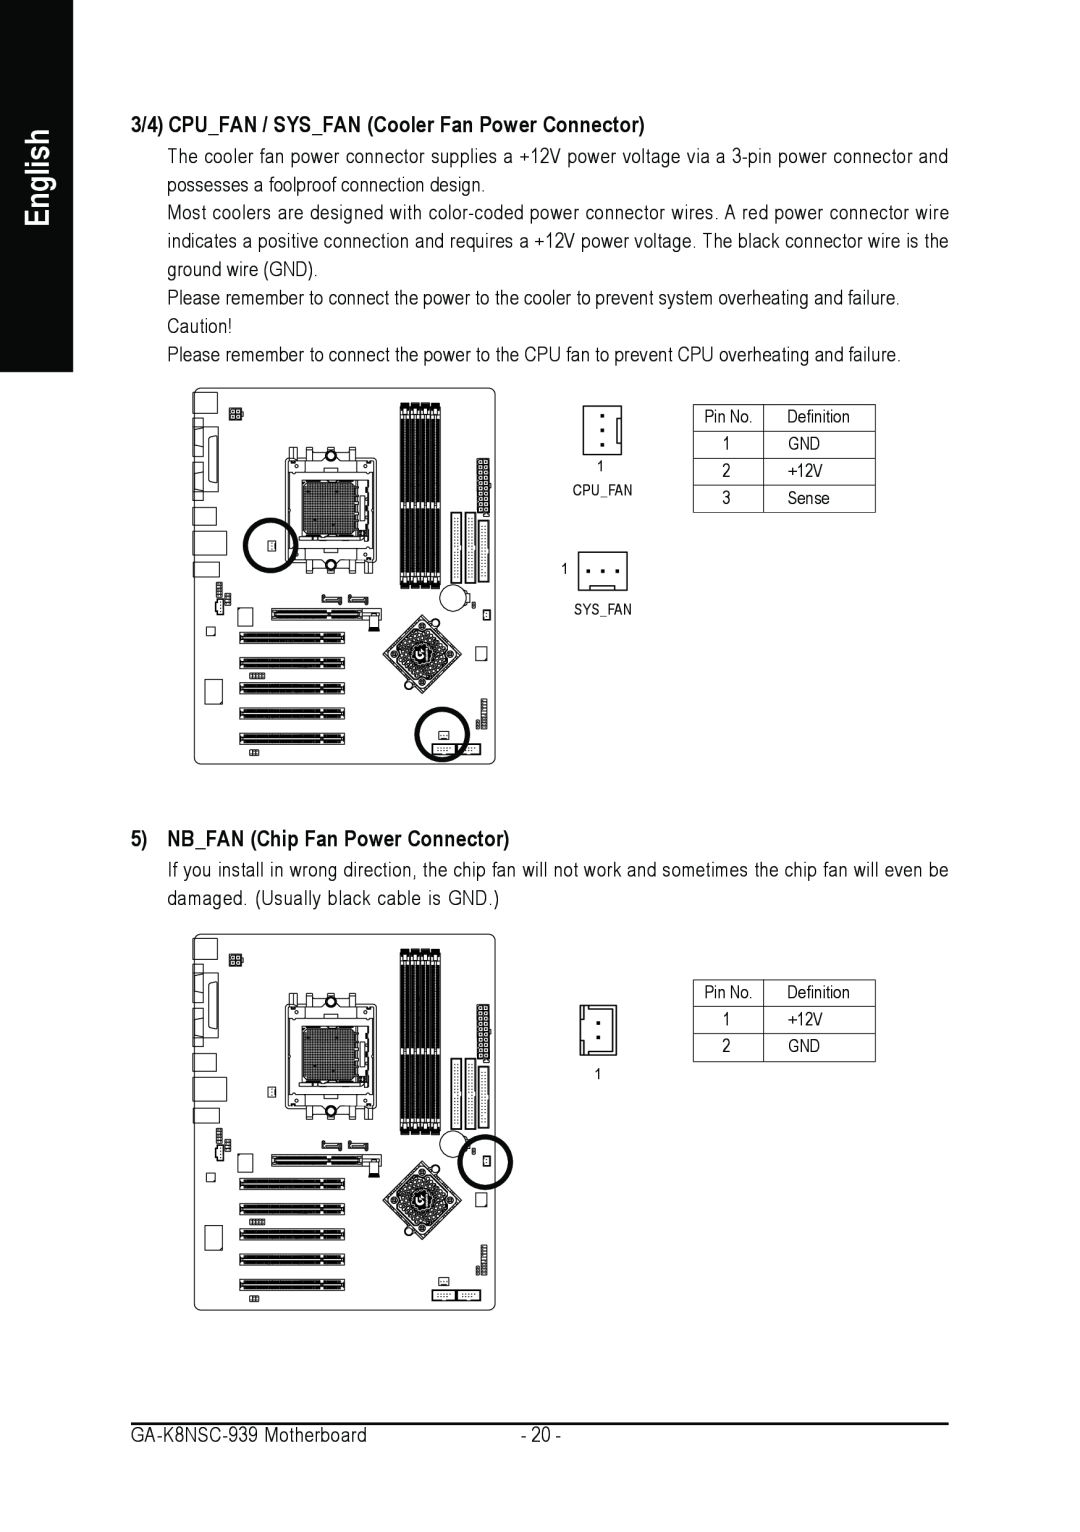 AMD GA-K8NSC-939 user manual 3/4 CPUFAN / SYSFAN Cooler Fan Power Connector, NBFAN Chip Fan Power Connector, English 